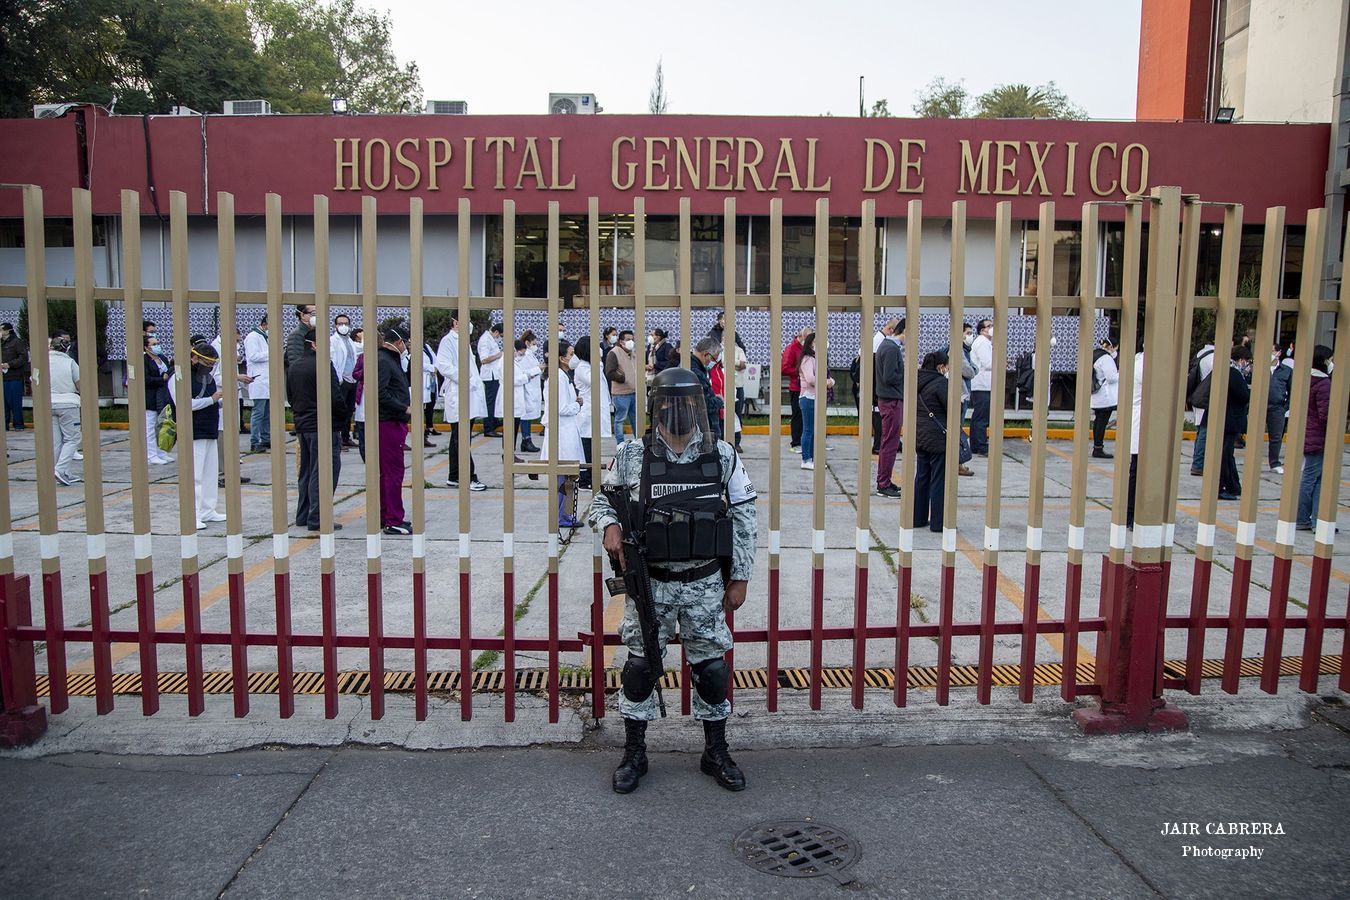 Un día después, de la llegada de las vacunas contra el Covid-19, comenzó la primera fase de vacunación en todo el sector Salud. Ciudad de México. Diciembre 2020